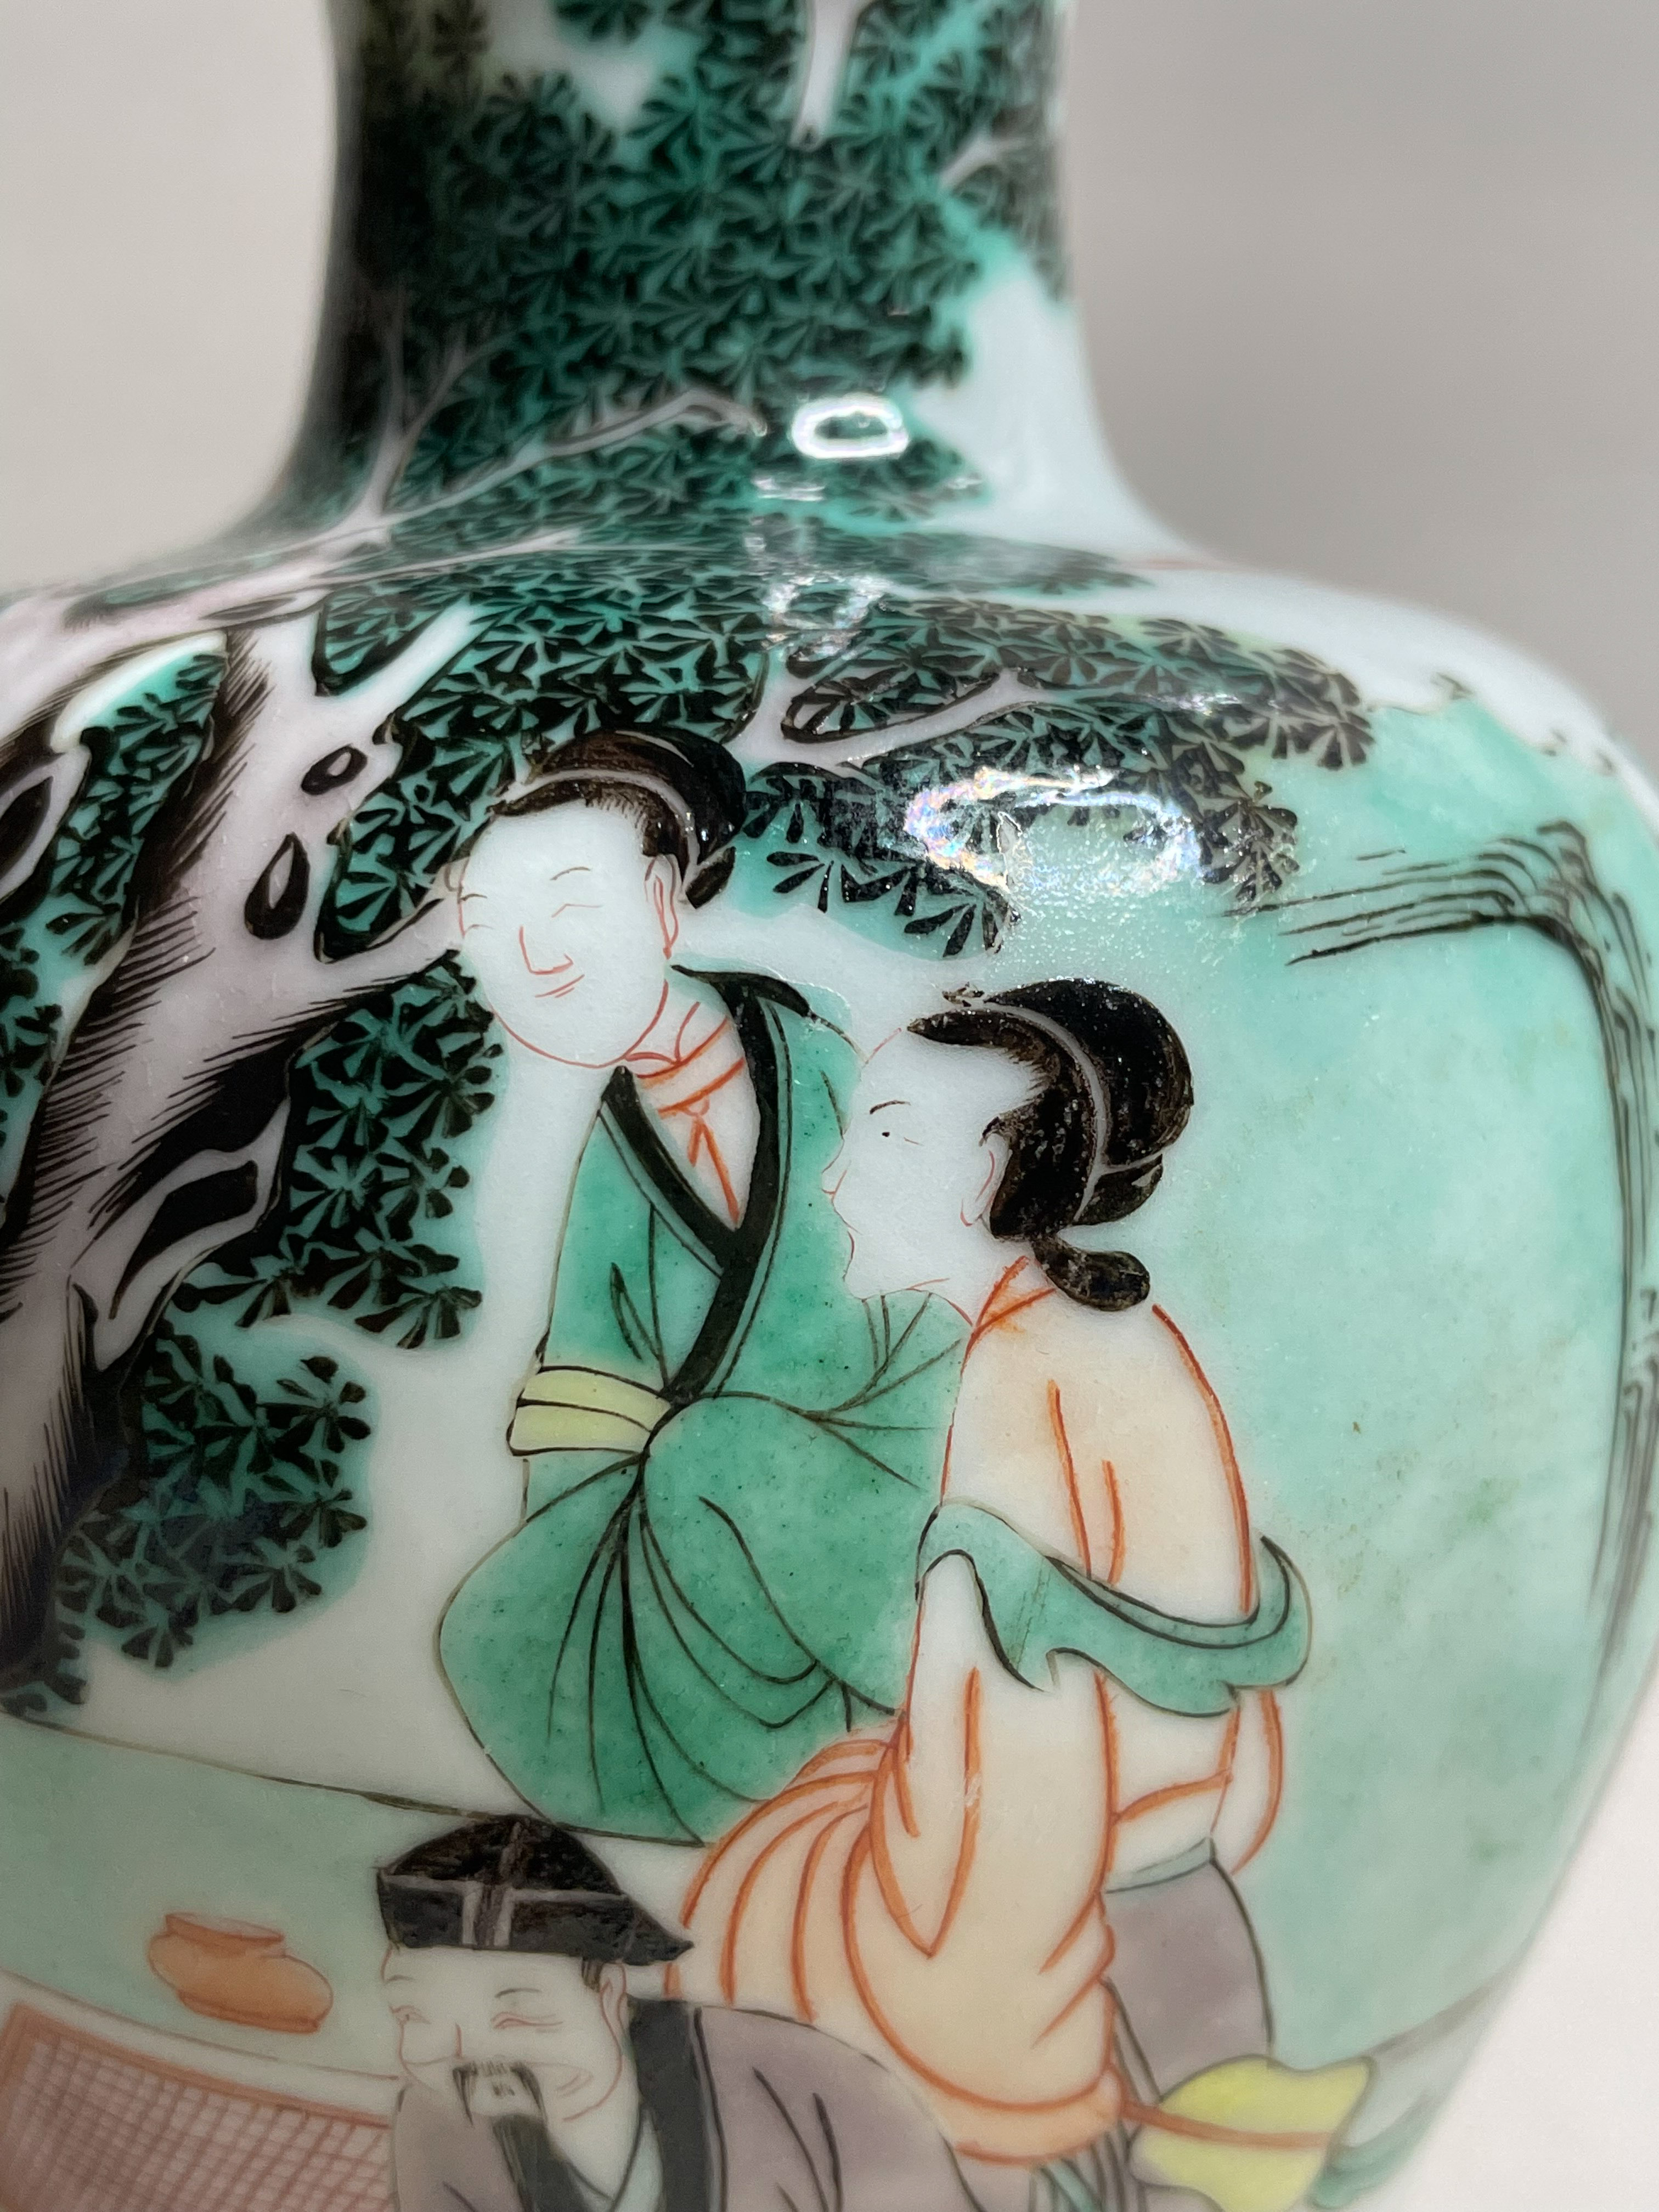 拍卖会 阪神美术夏季精品拍卖会 京都私人提供唐人瓷器专场 